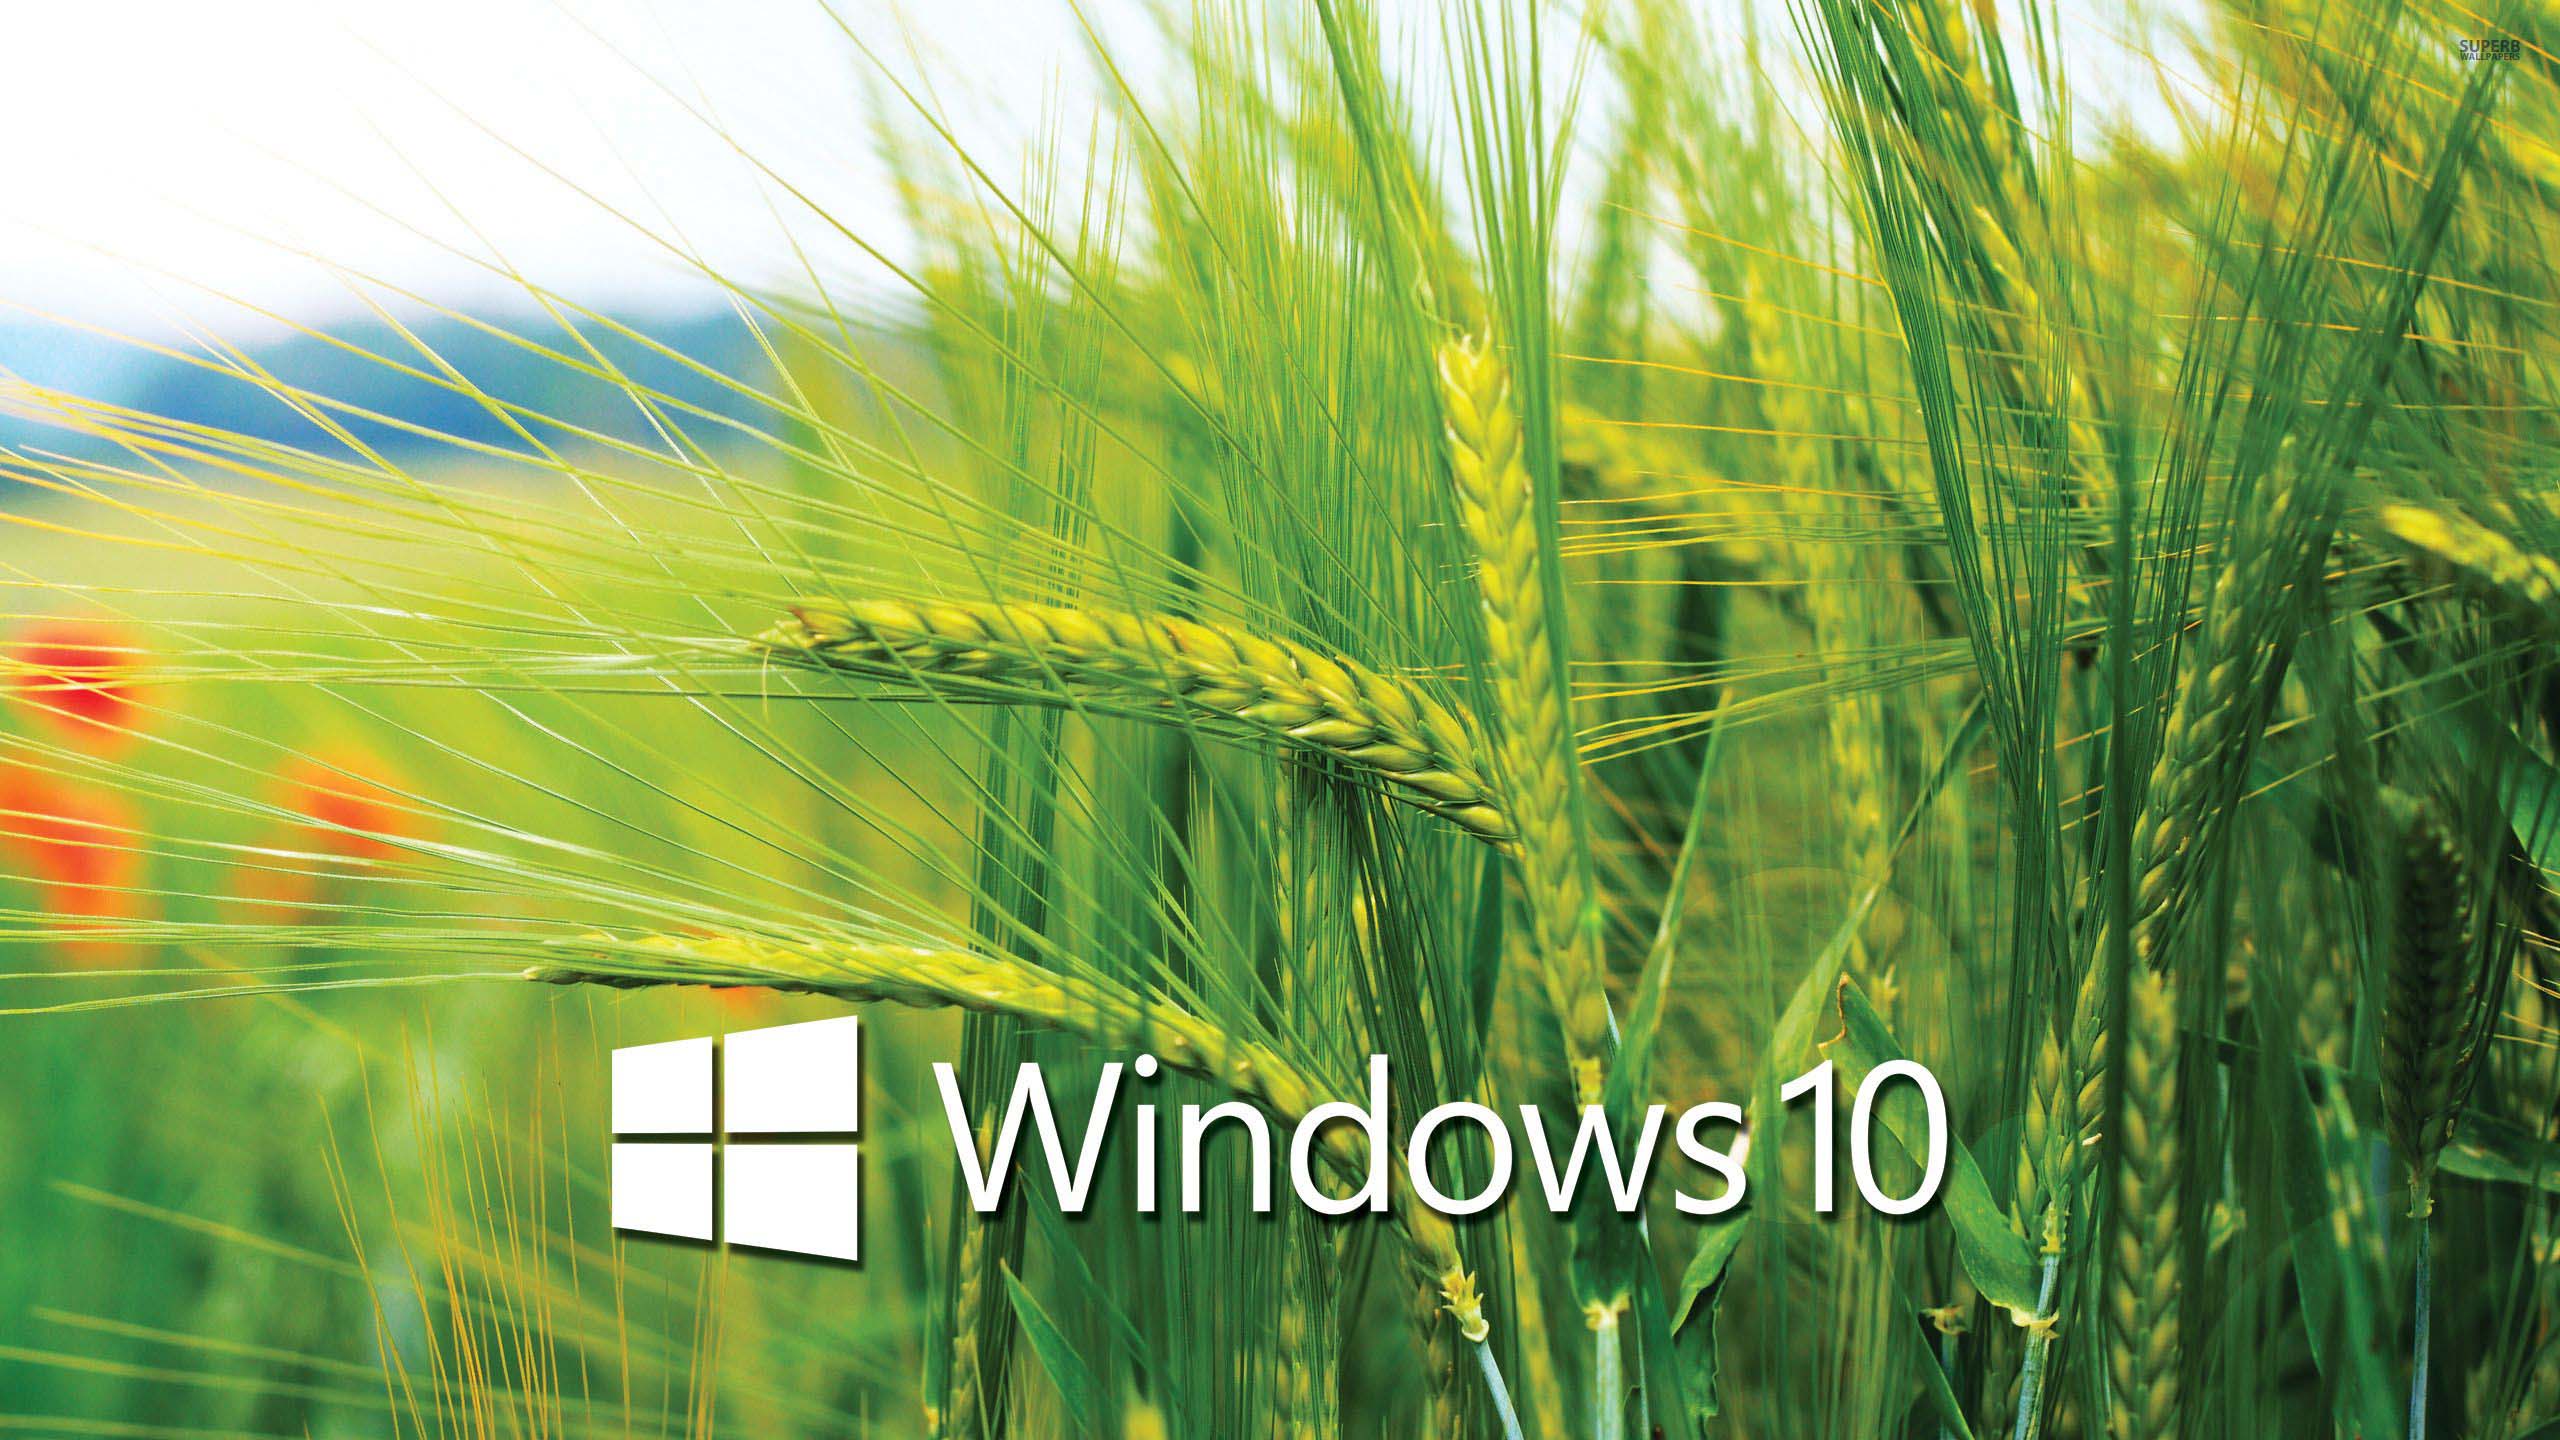 Hình nền Windows 10 cho máy tính